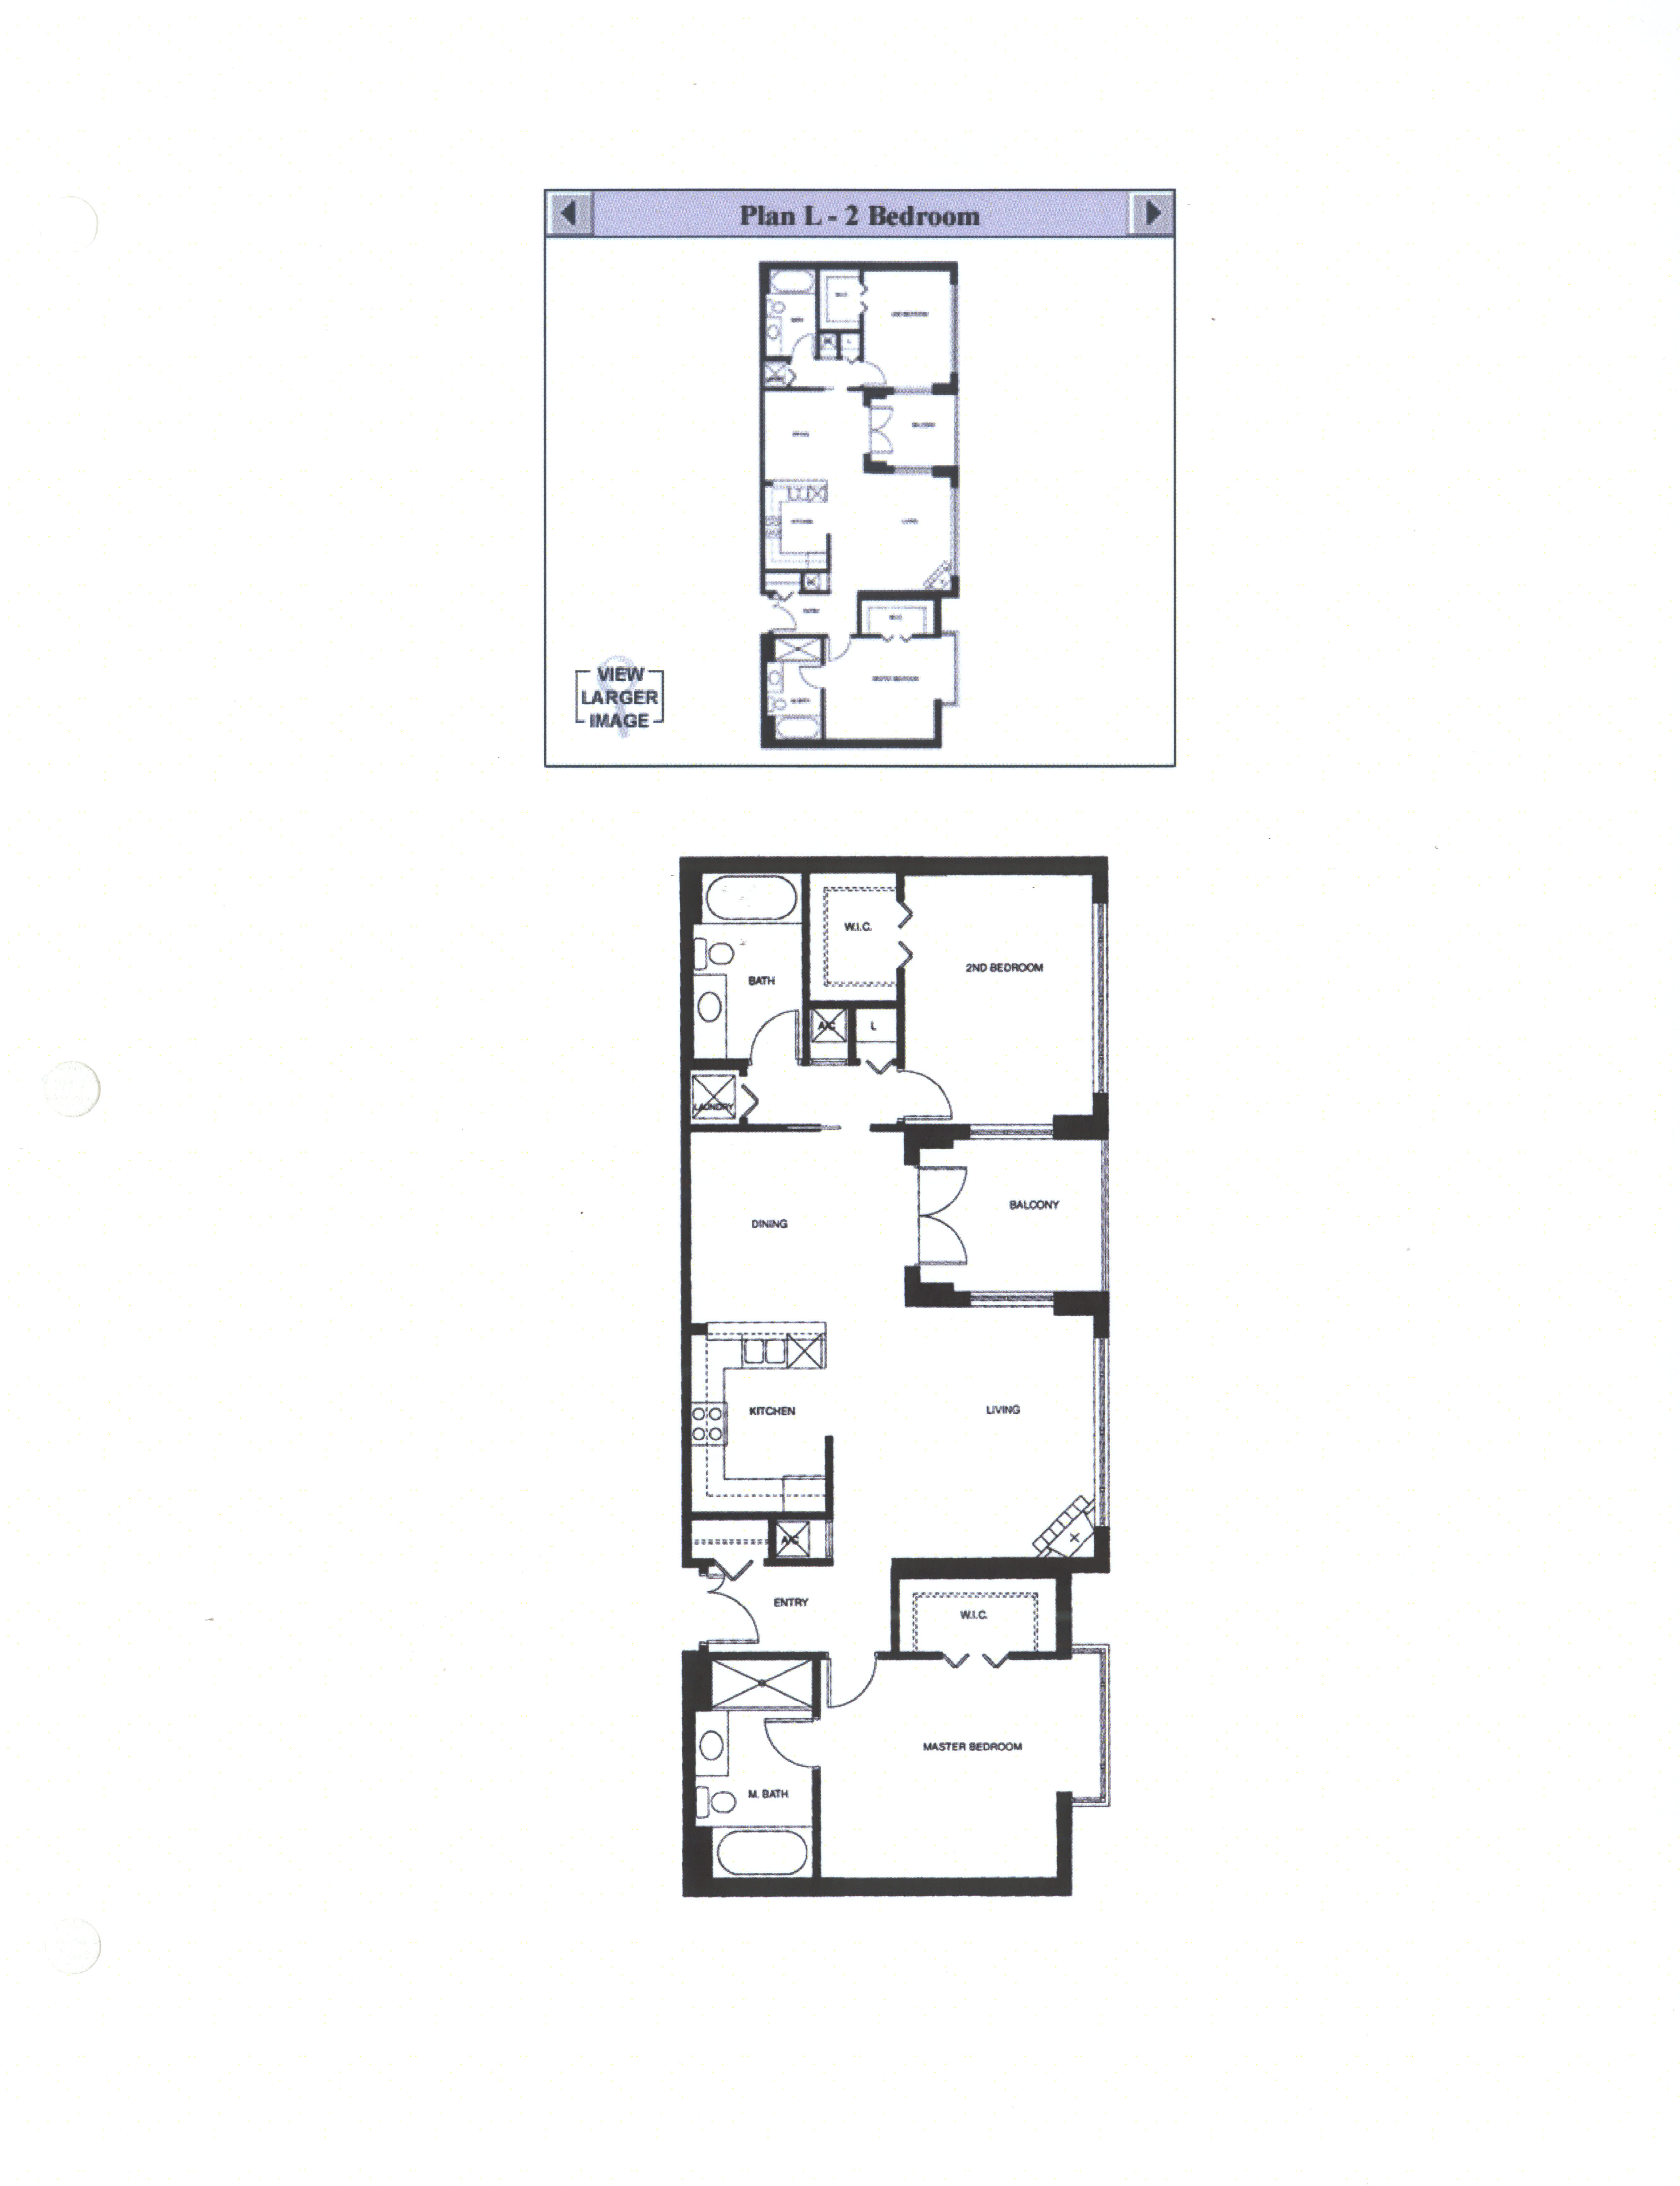 Discovery Floor Plan L – 2 Bedroom